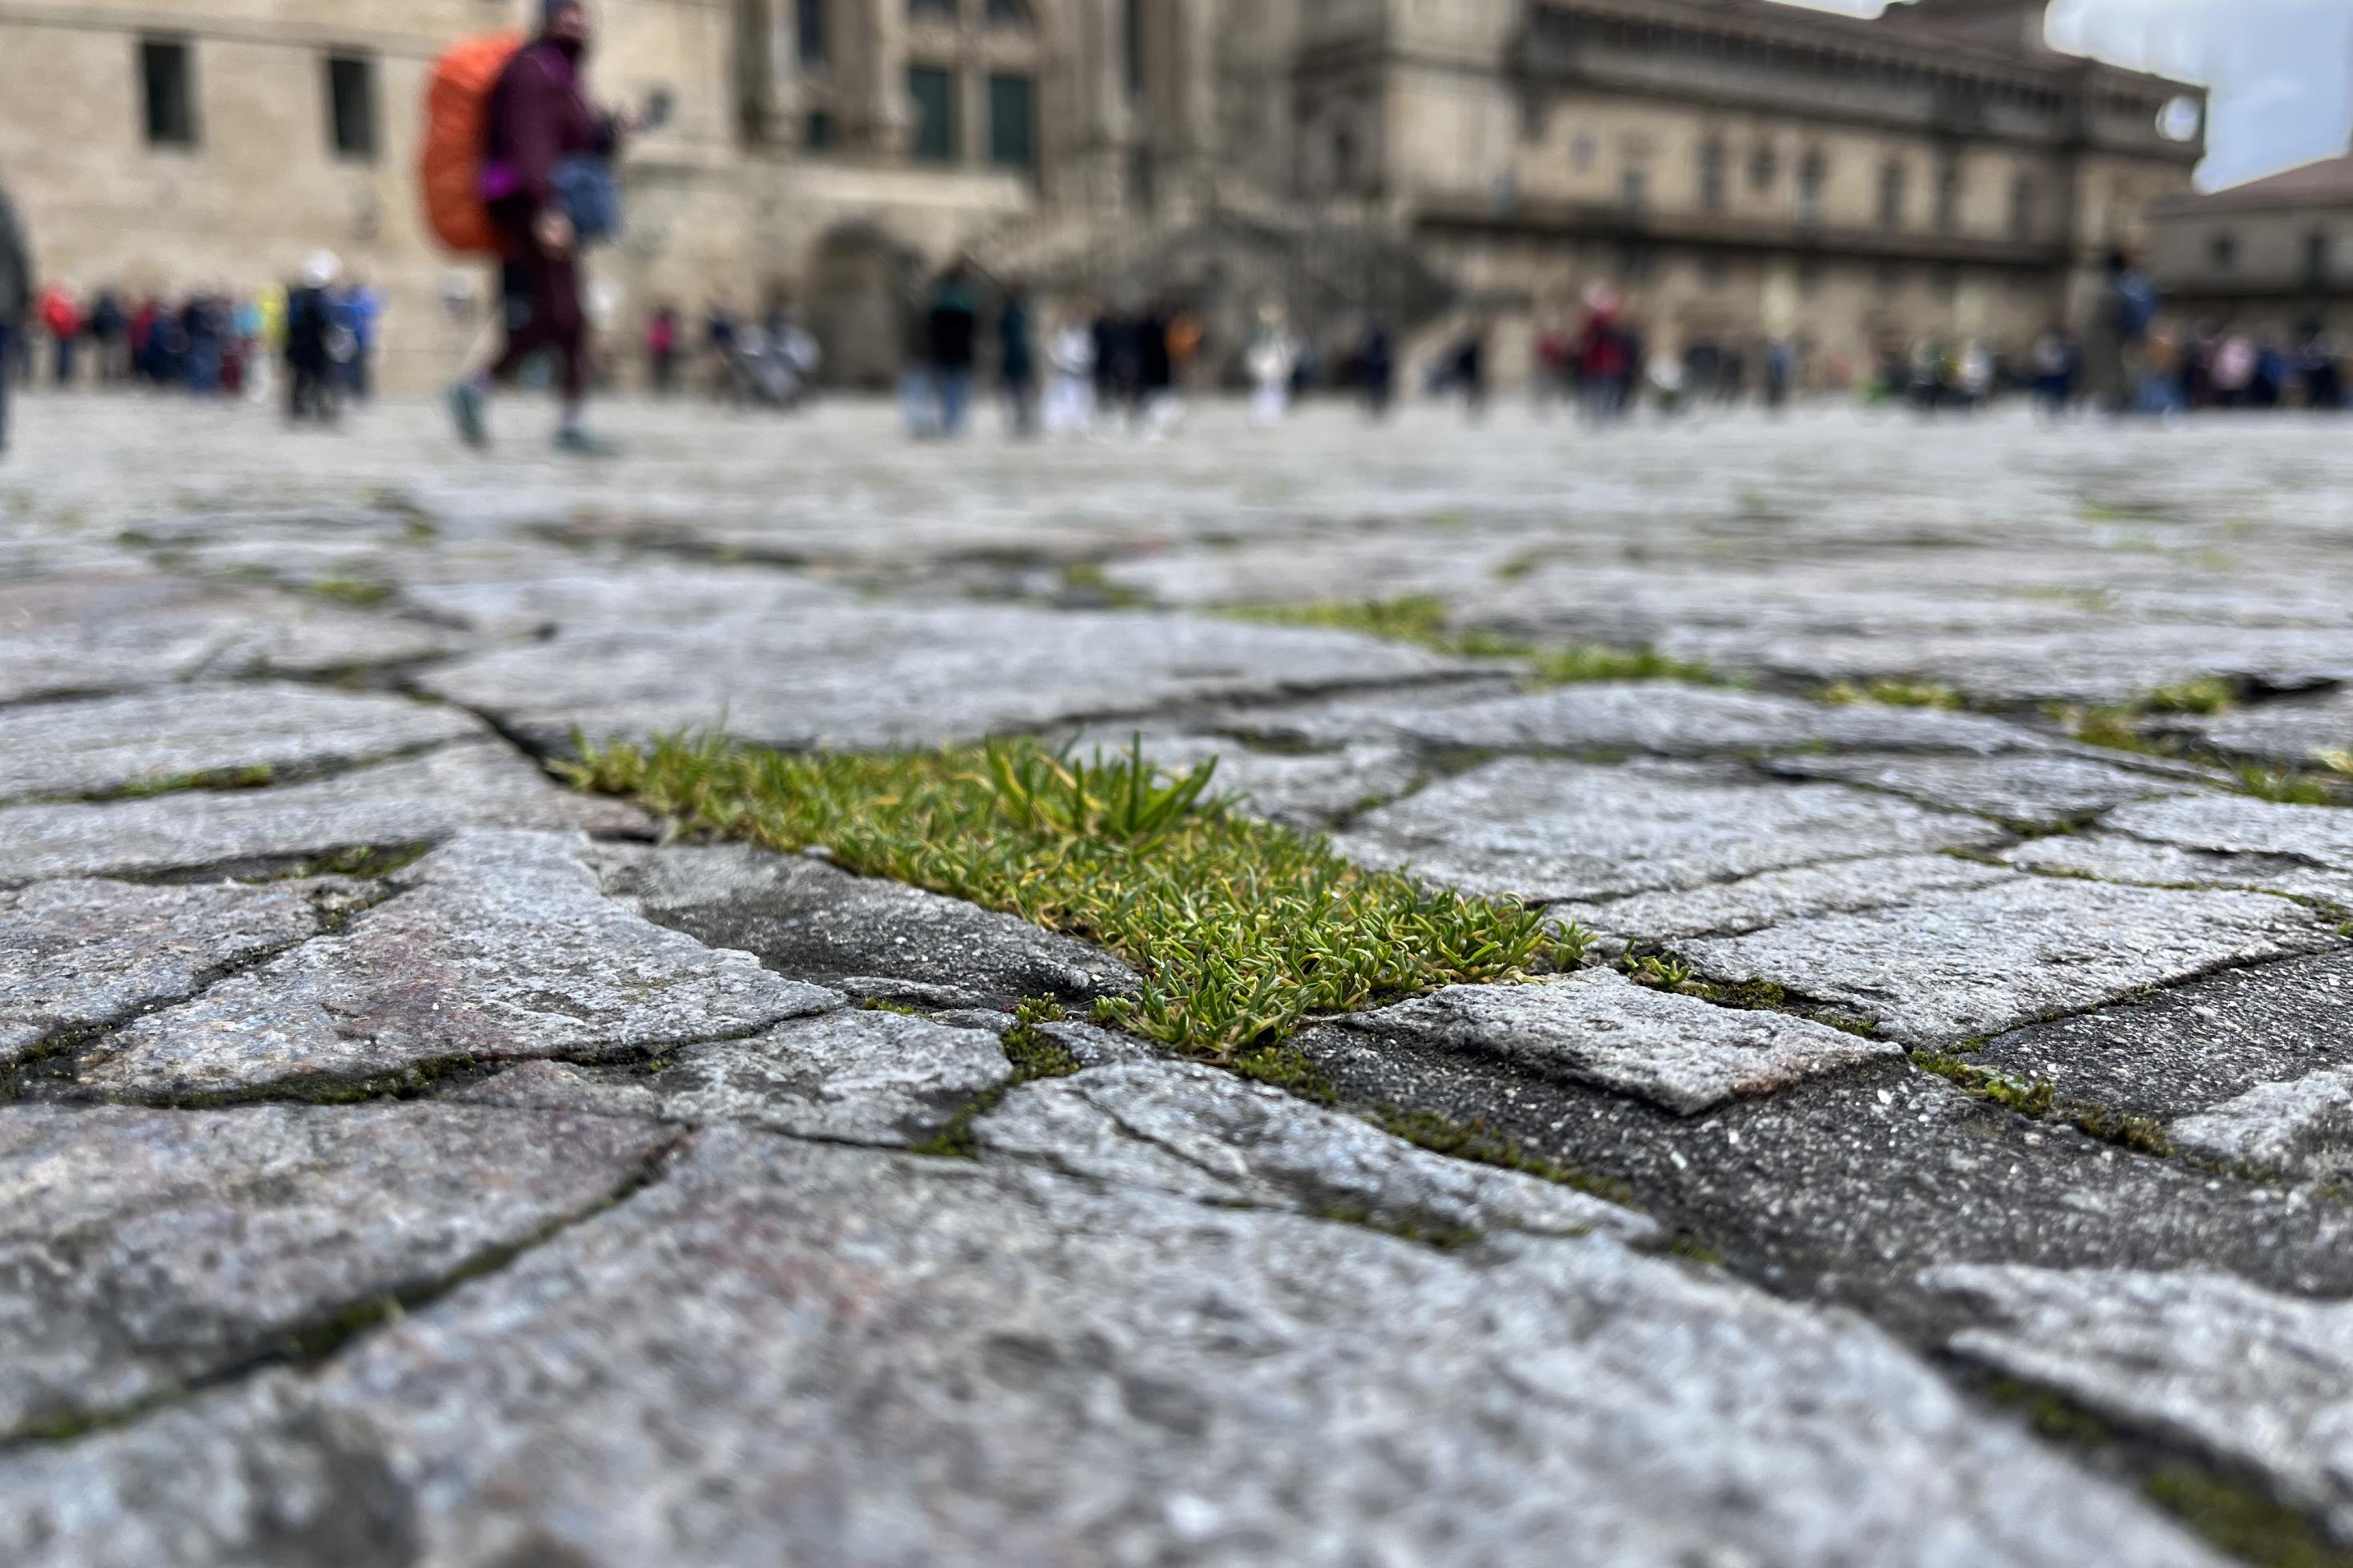 Im Fokus des Fotos, das den berühmten Obradoiro-Platz in Santiago de Compostela zeigt, sprießen kleine Gräser und Kräuter.